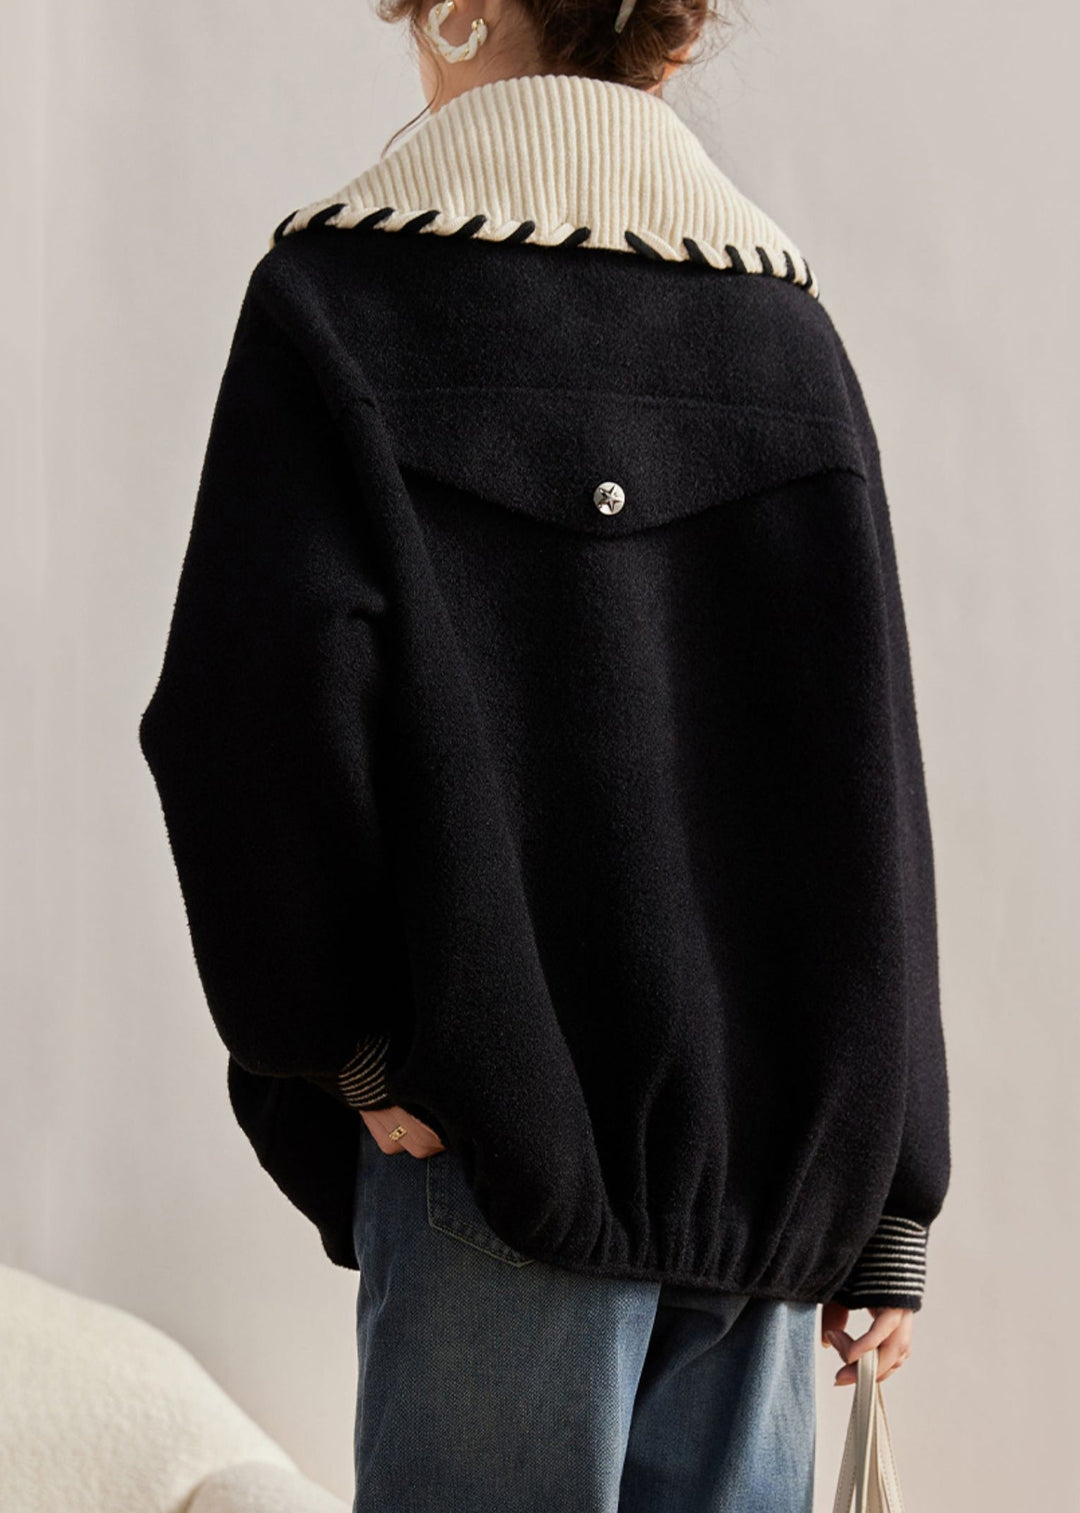 Loose Black Peter Pan Collar Button Pockets Woolen Coats Long Sleeve